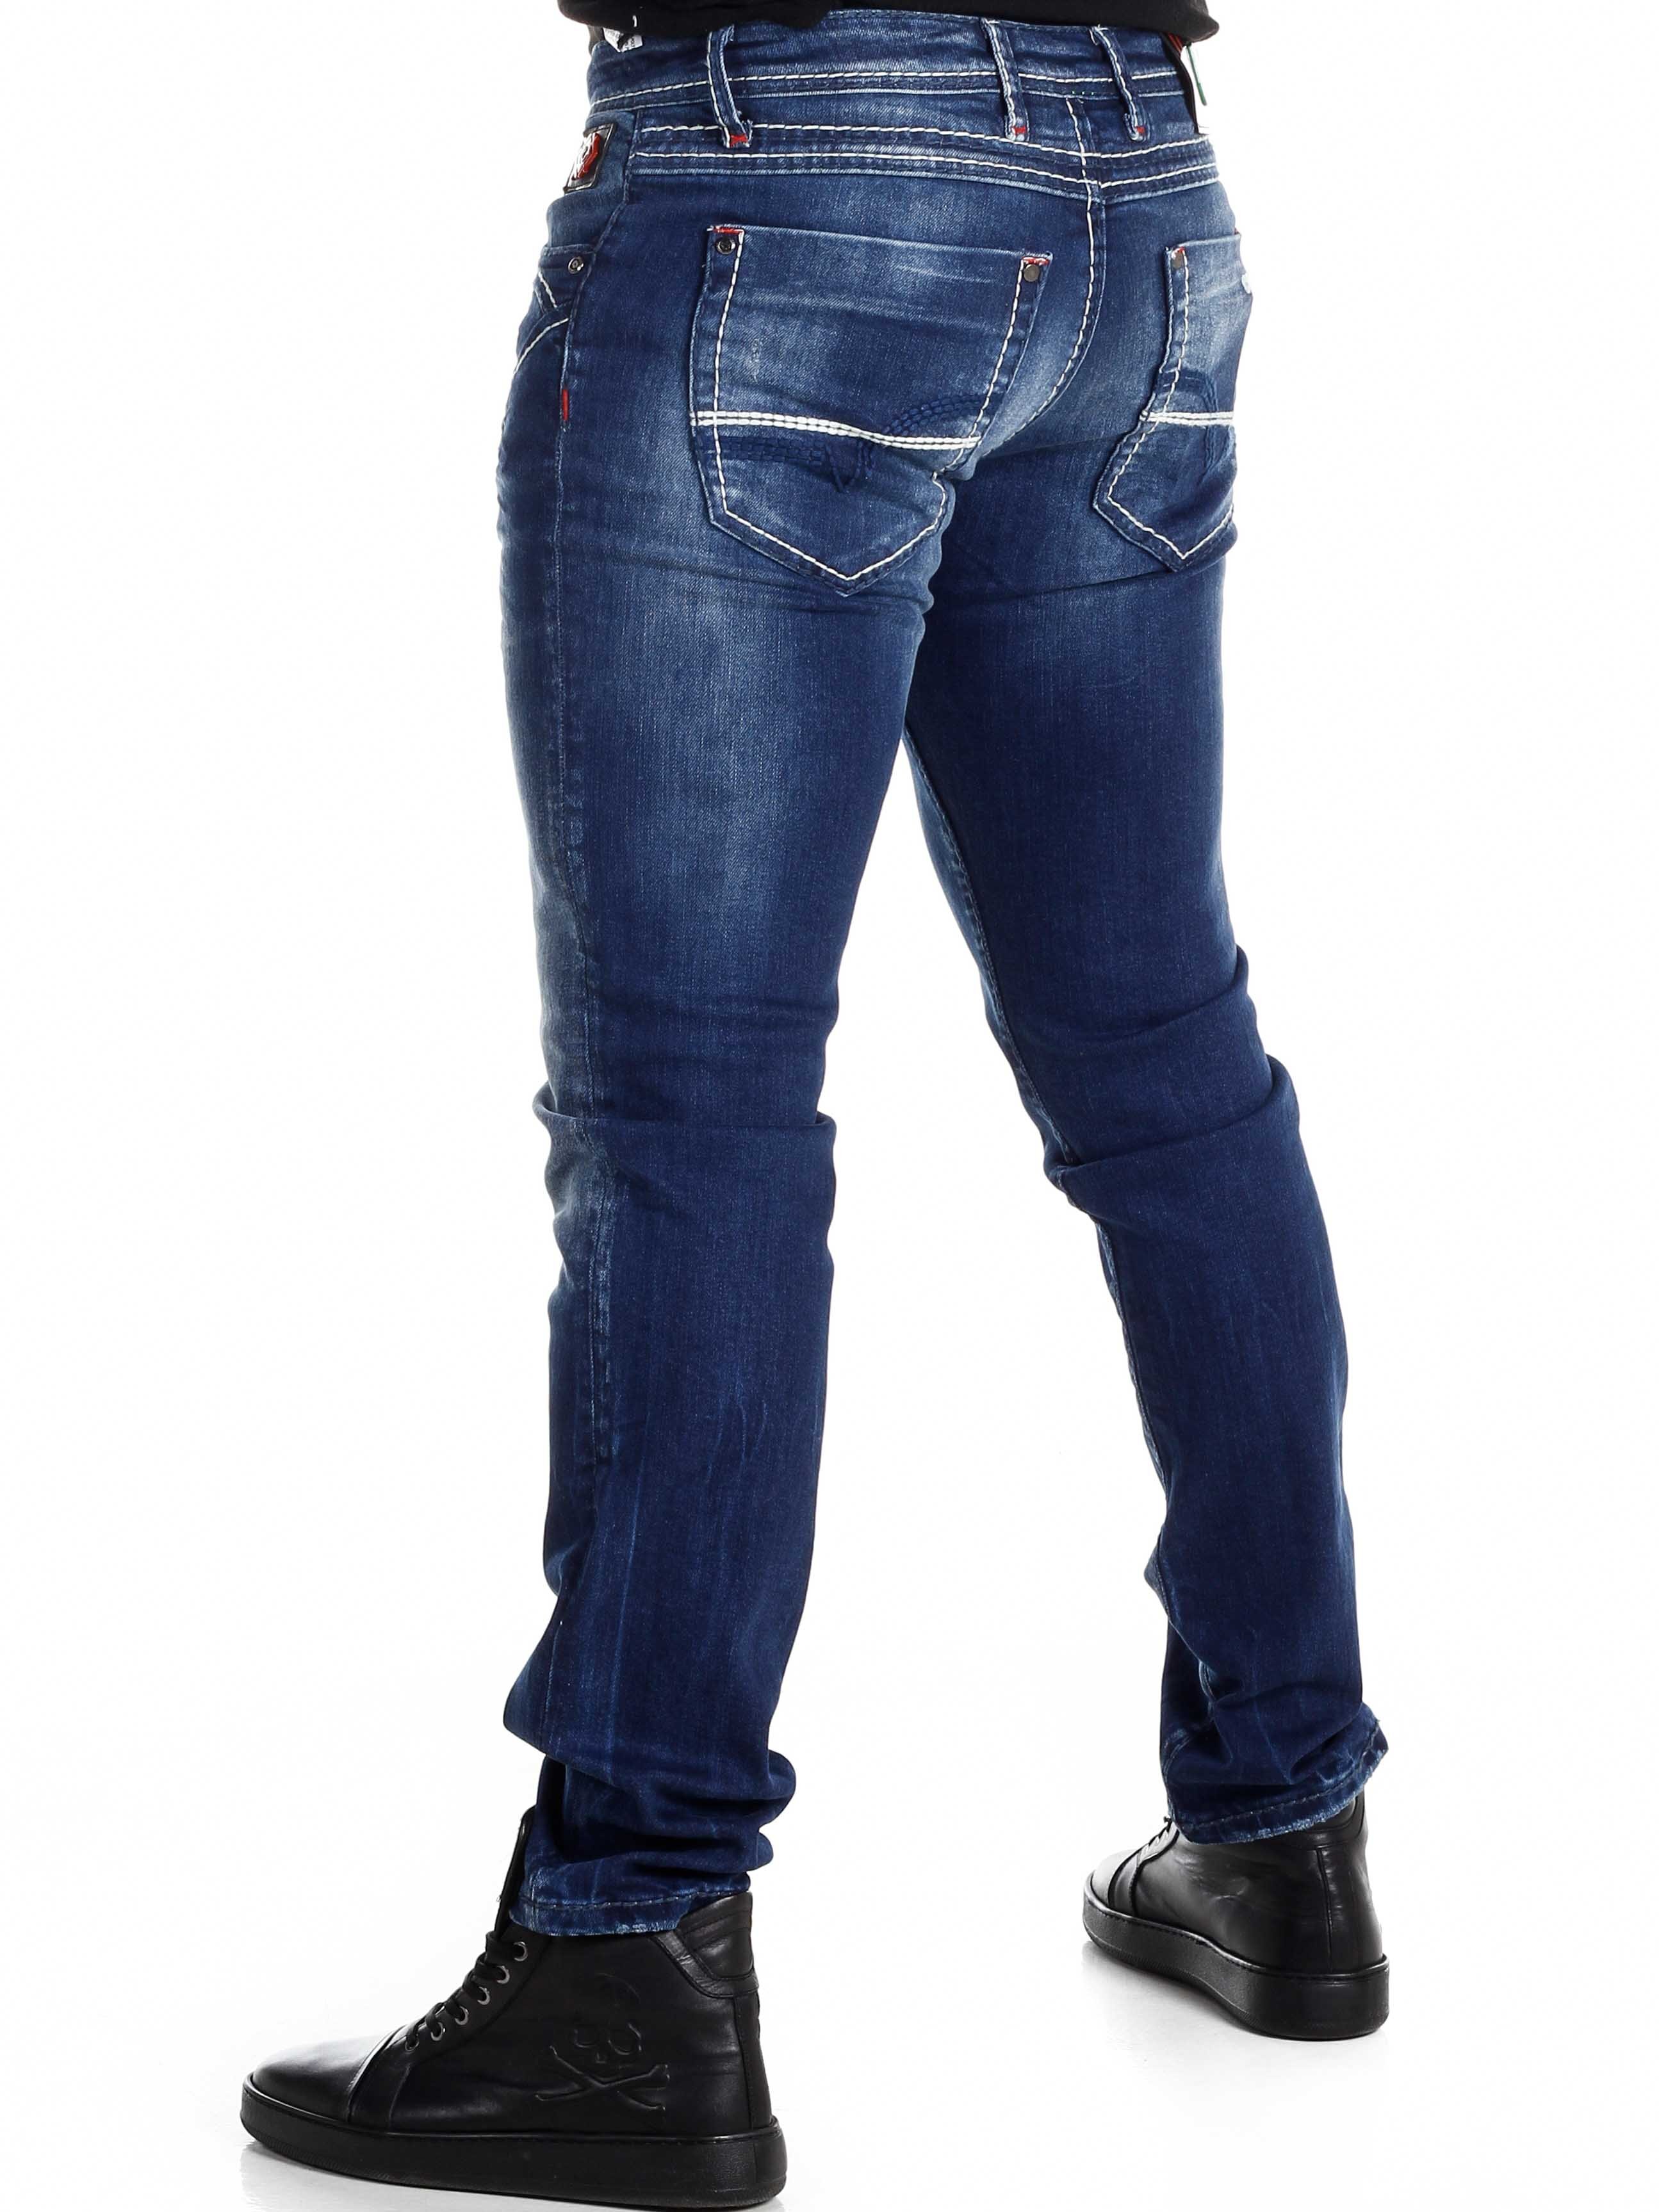 Kwister Cipo & Baxx Jeans - Blå